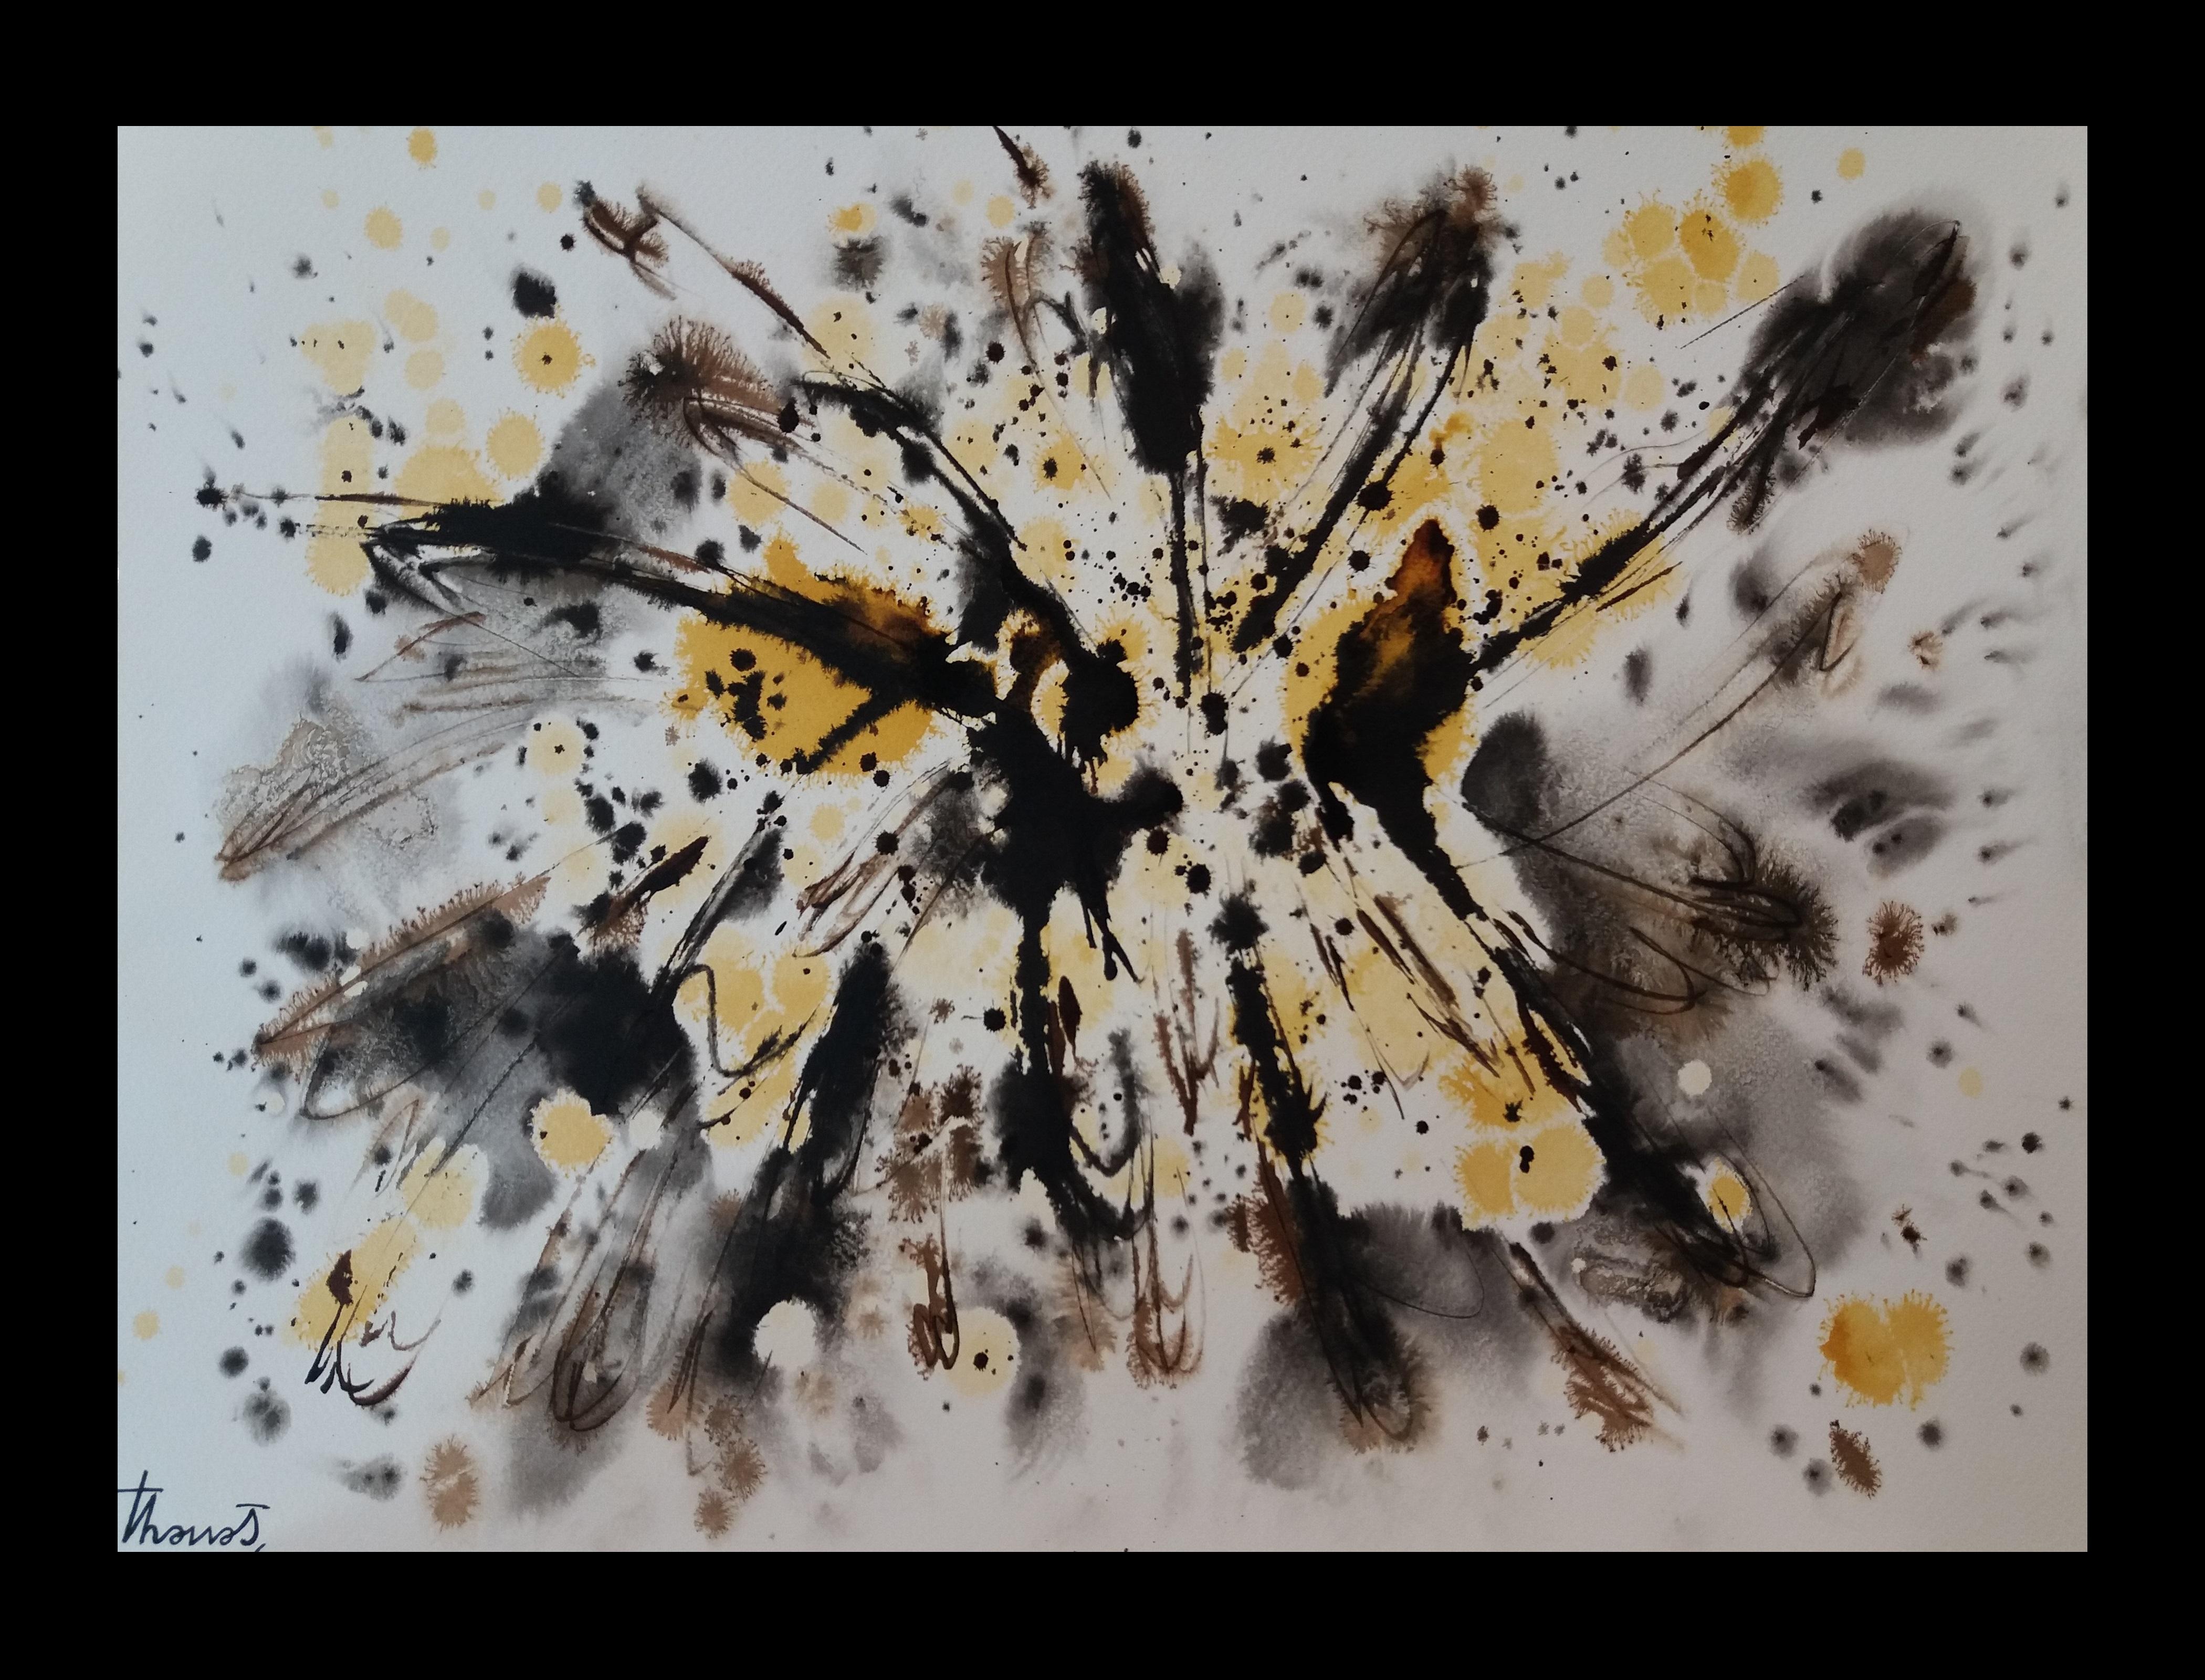 Tharrats  Noir  abstraite jaune d'origine  Peinture sur papier acrylique - Painting de Josep THARRATS